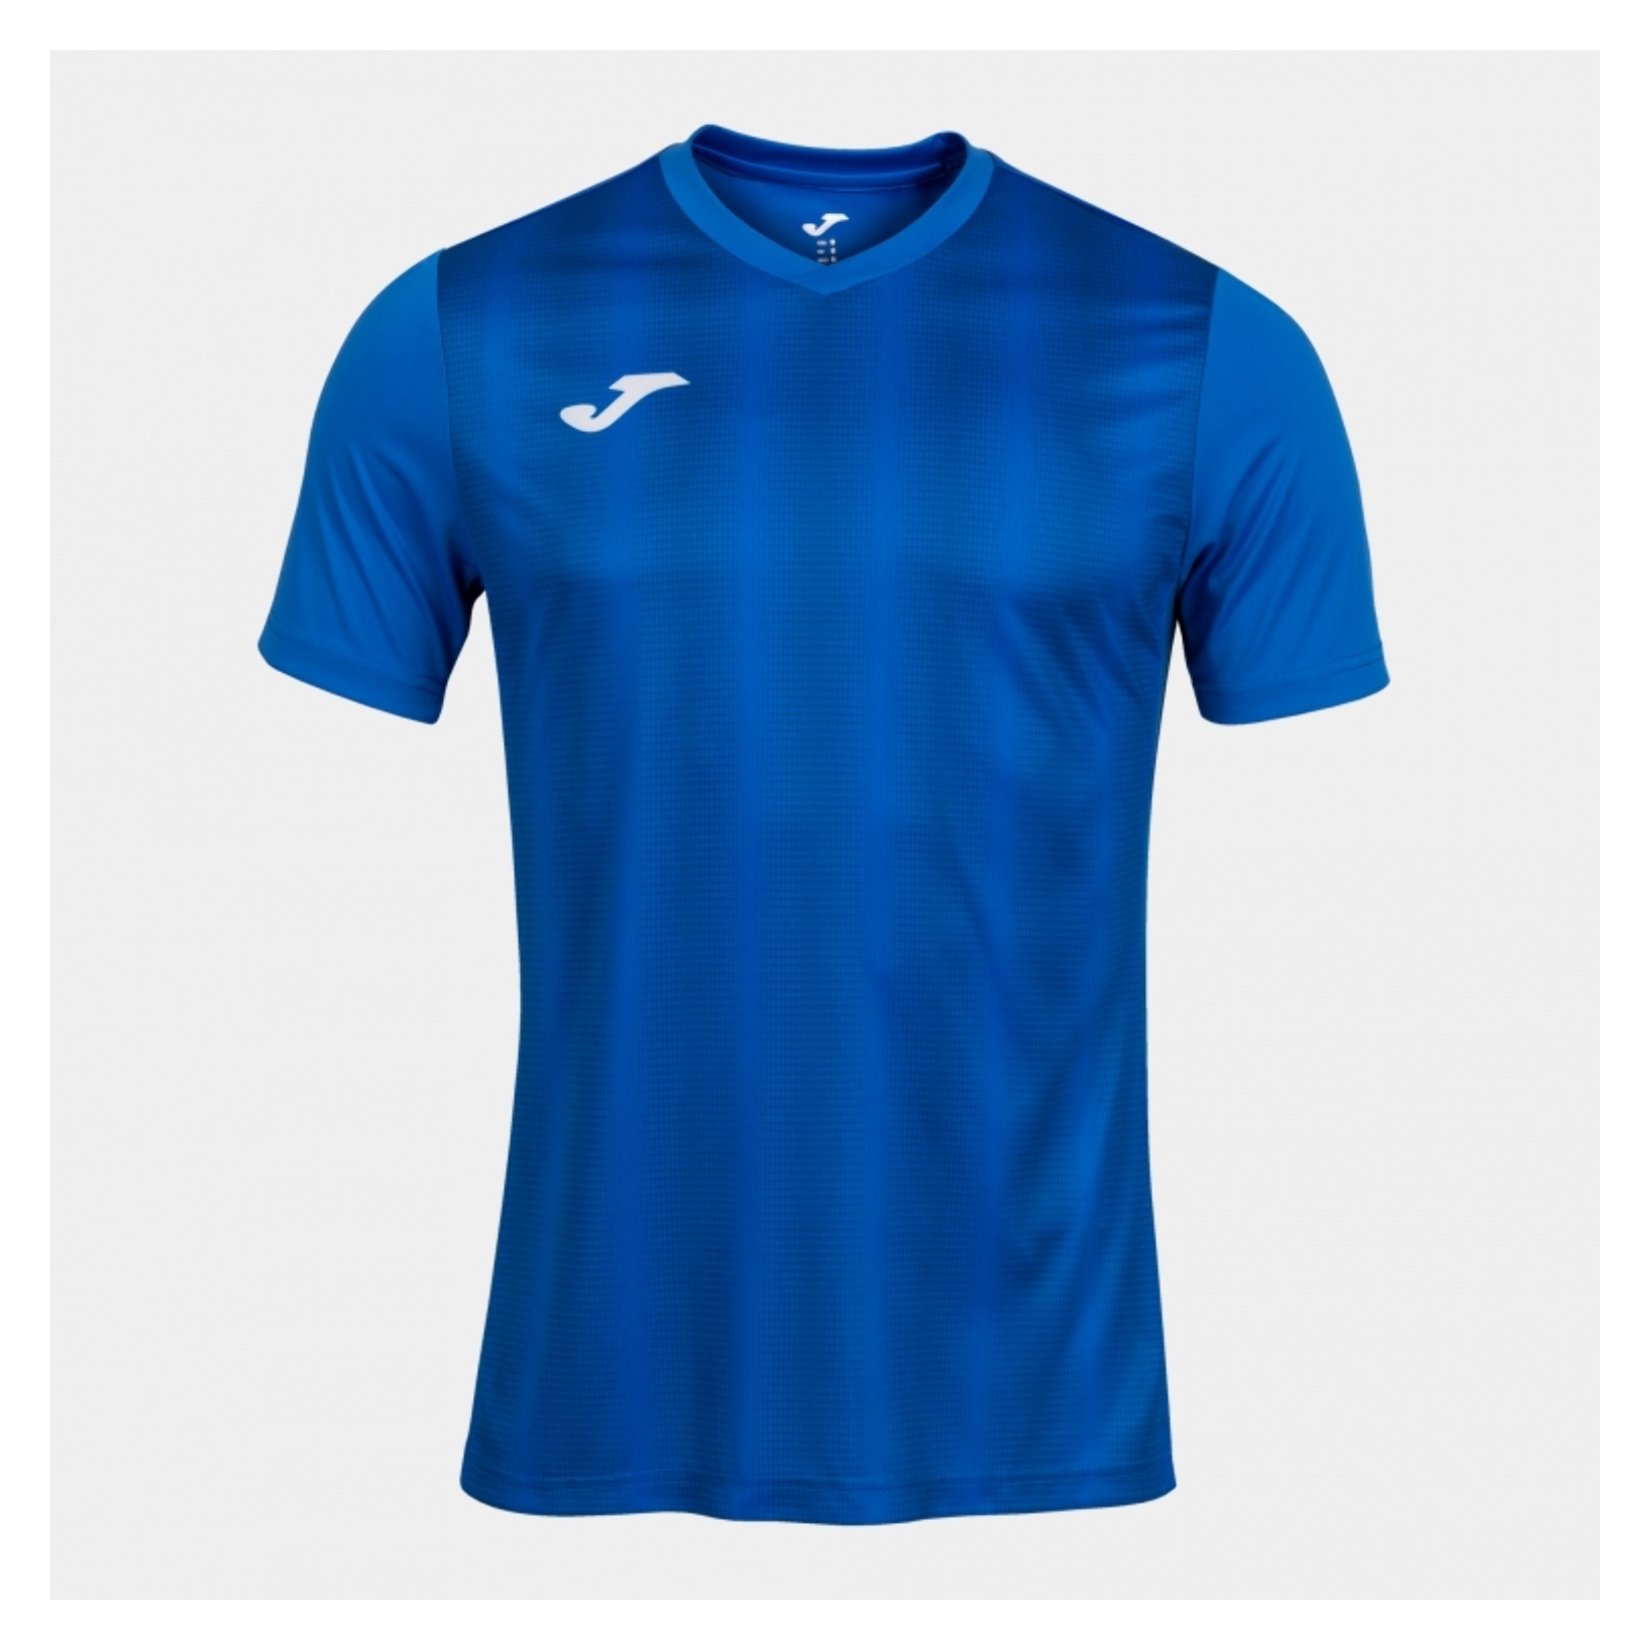 Joma Inter II Striped Short Sleeve Jersey - Kitlocker.com